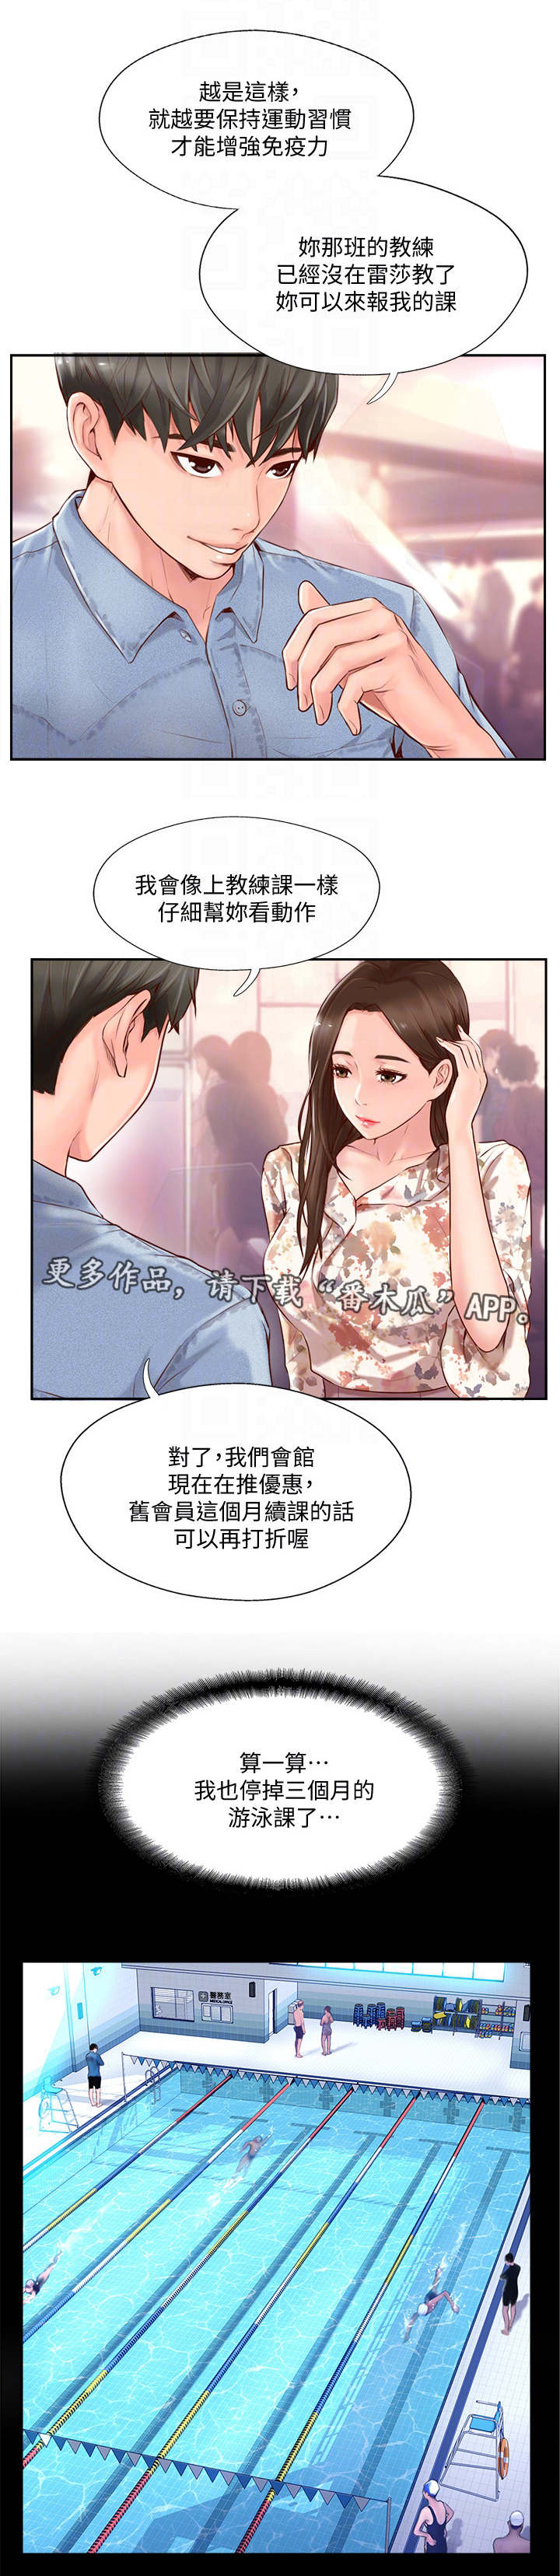 韩国漫画《完美新伴侣》完整版全文在线阅读